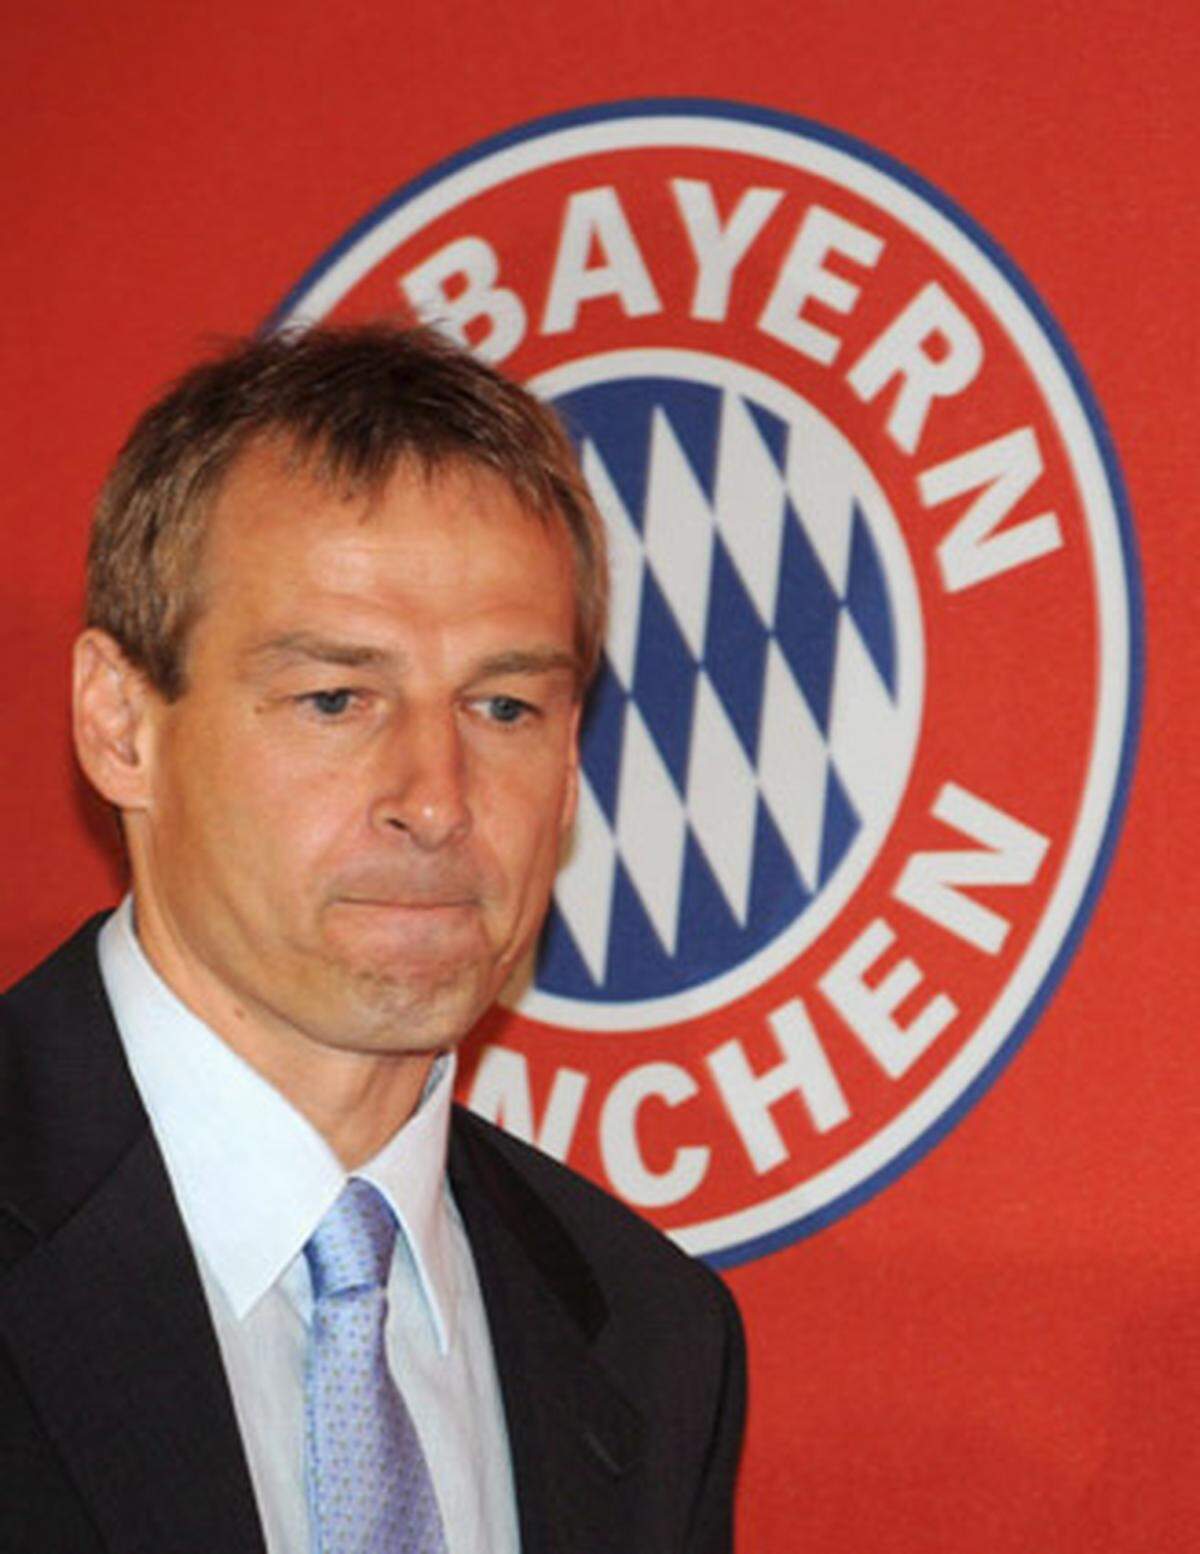 Im Sommer 2008 übernahm Jürgen Klinsmann das Amt des Trainers bei Bayern München. "Wer es geschafft hat, den Problemfall Fußball-Nationalmannschaft, die 2004 am Boden lag, so weit zu führen, wie er es bei der WM geschafft hat, der wird das auch mit einer Mannschaft des FC Bayern schaffen. Davon bin ich überzeugt", sagte Bayern-Manager Uli Hoeneß über den neuen Coach. Schon im April 2009 wurde "Klinsi" wegen Erfolglosigkeit gefeuert.